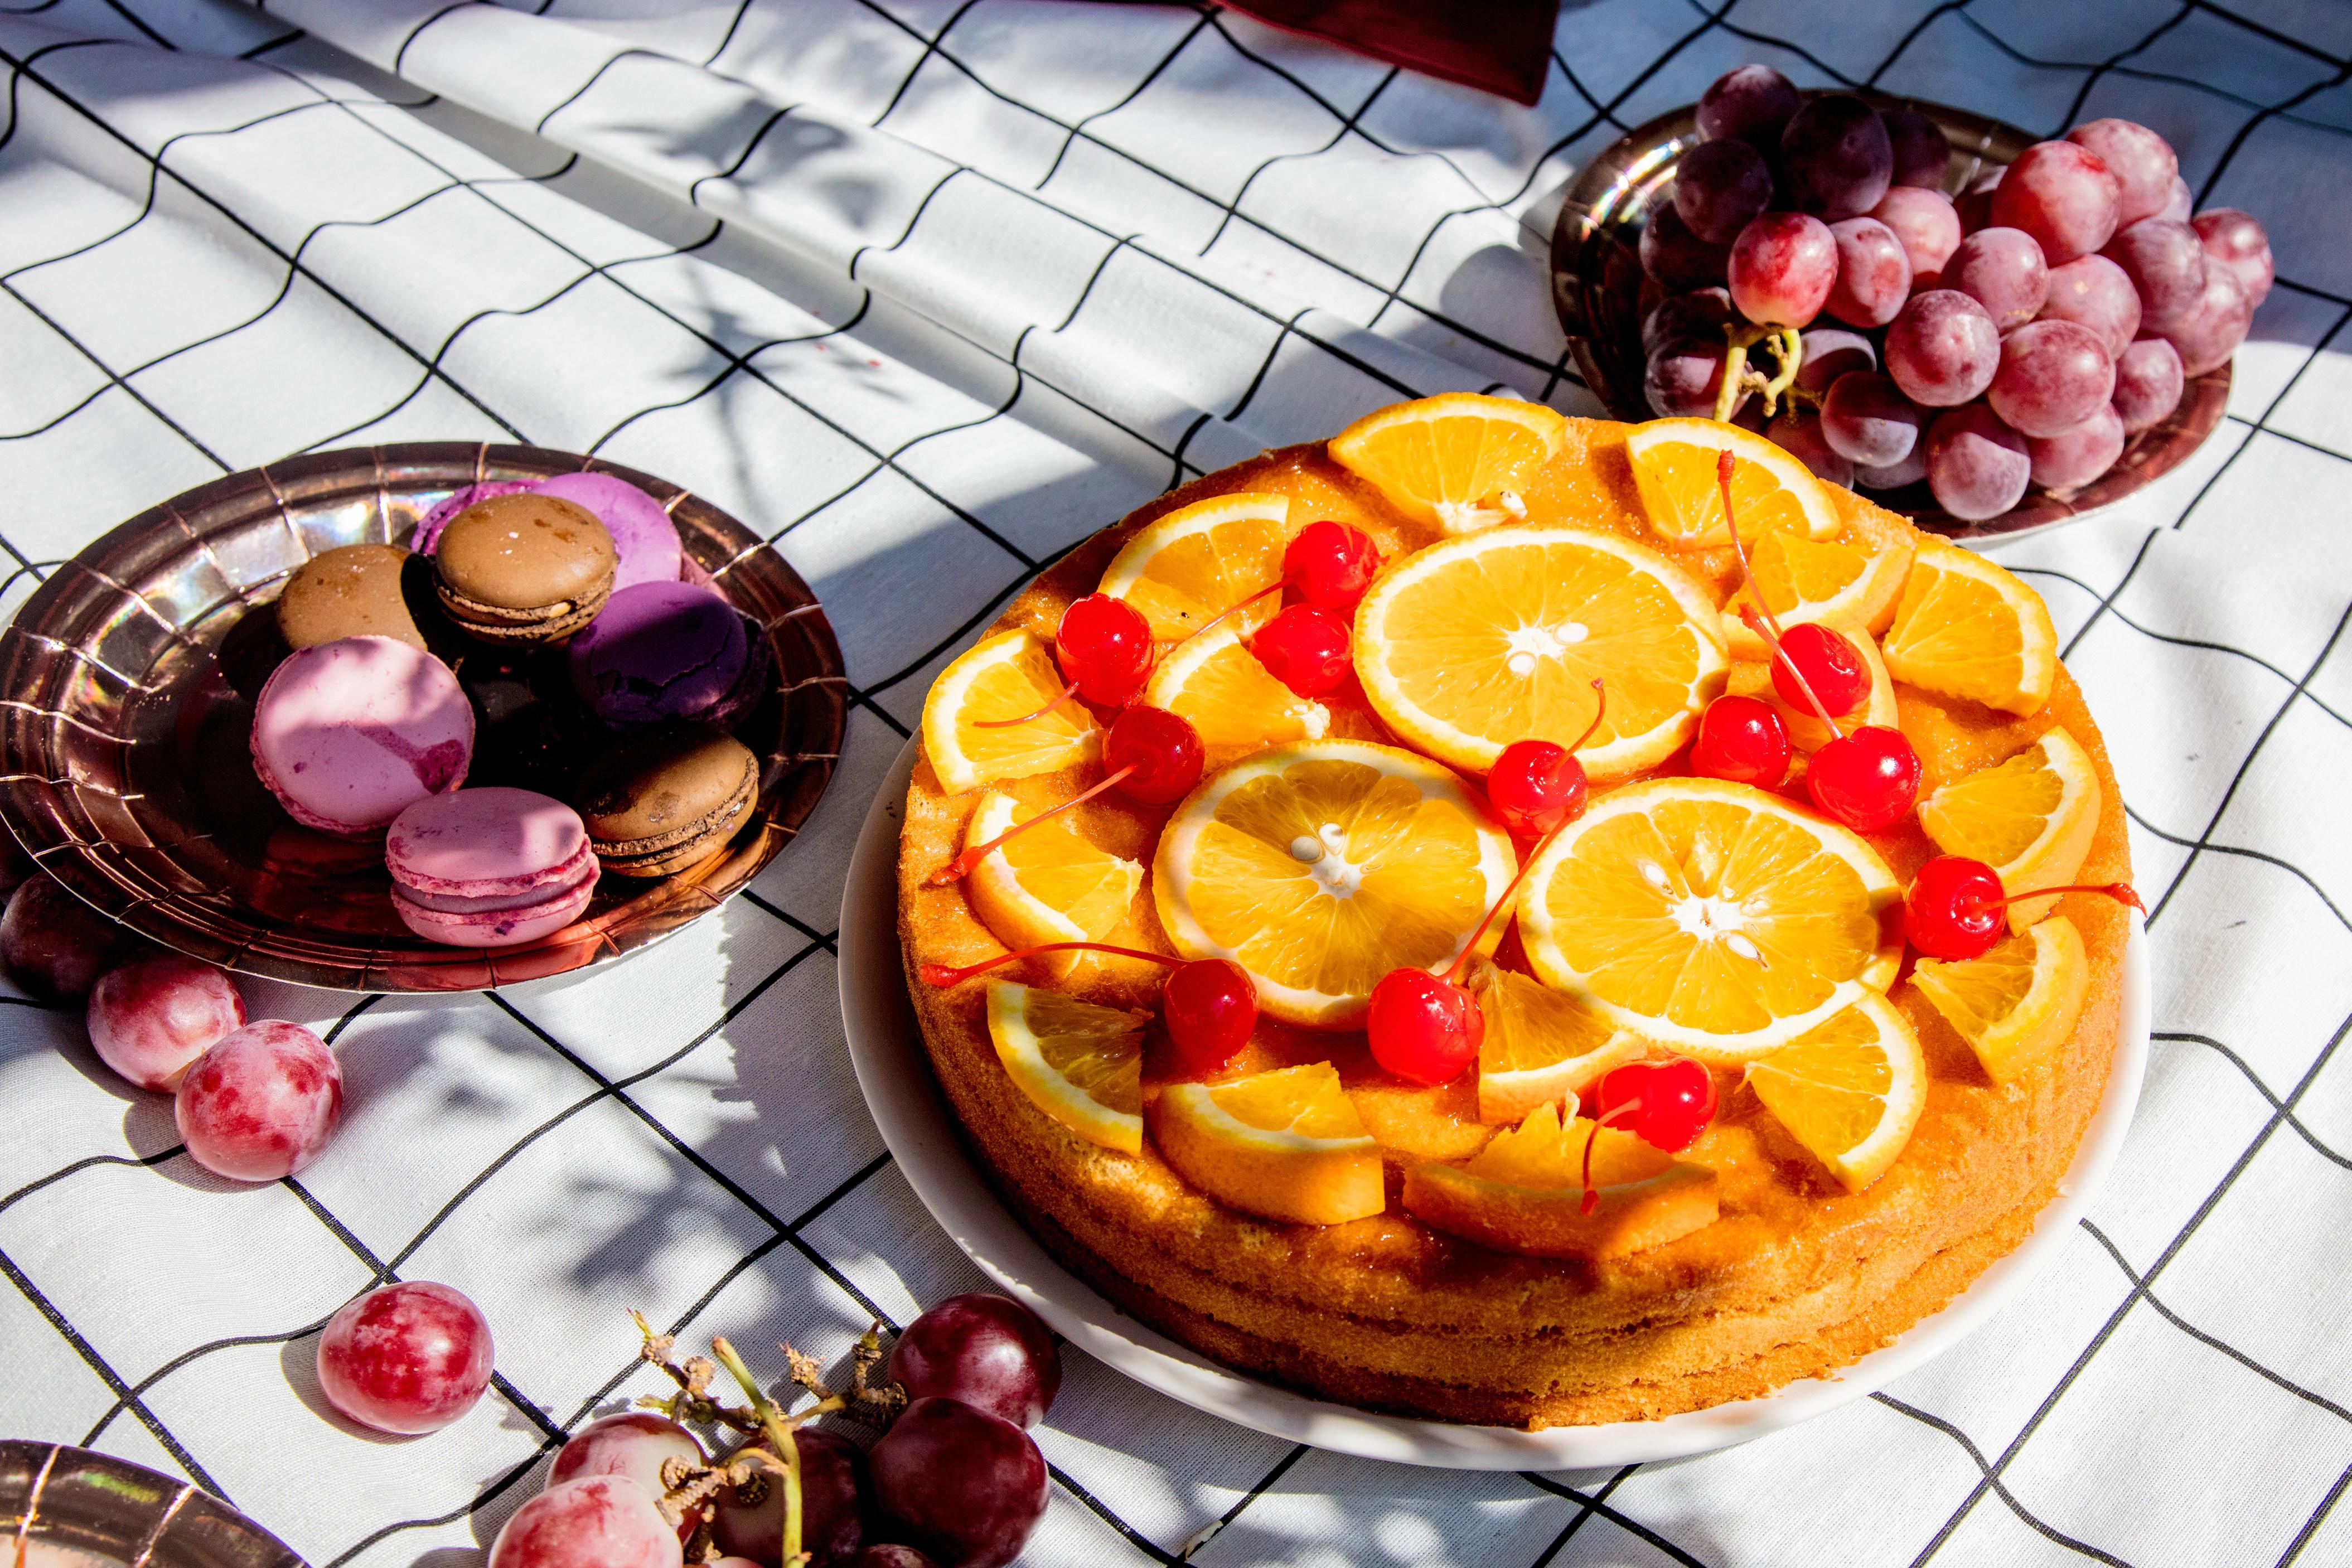 En härlig tårta toppad med apelsinskivor och körsbär. Tårtan står på en picknickfilt och bredvid står en tallrik med vindruvor samt en tallrik med macarons. 